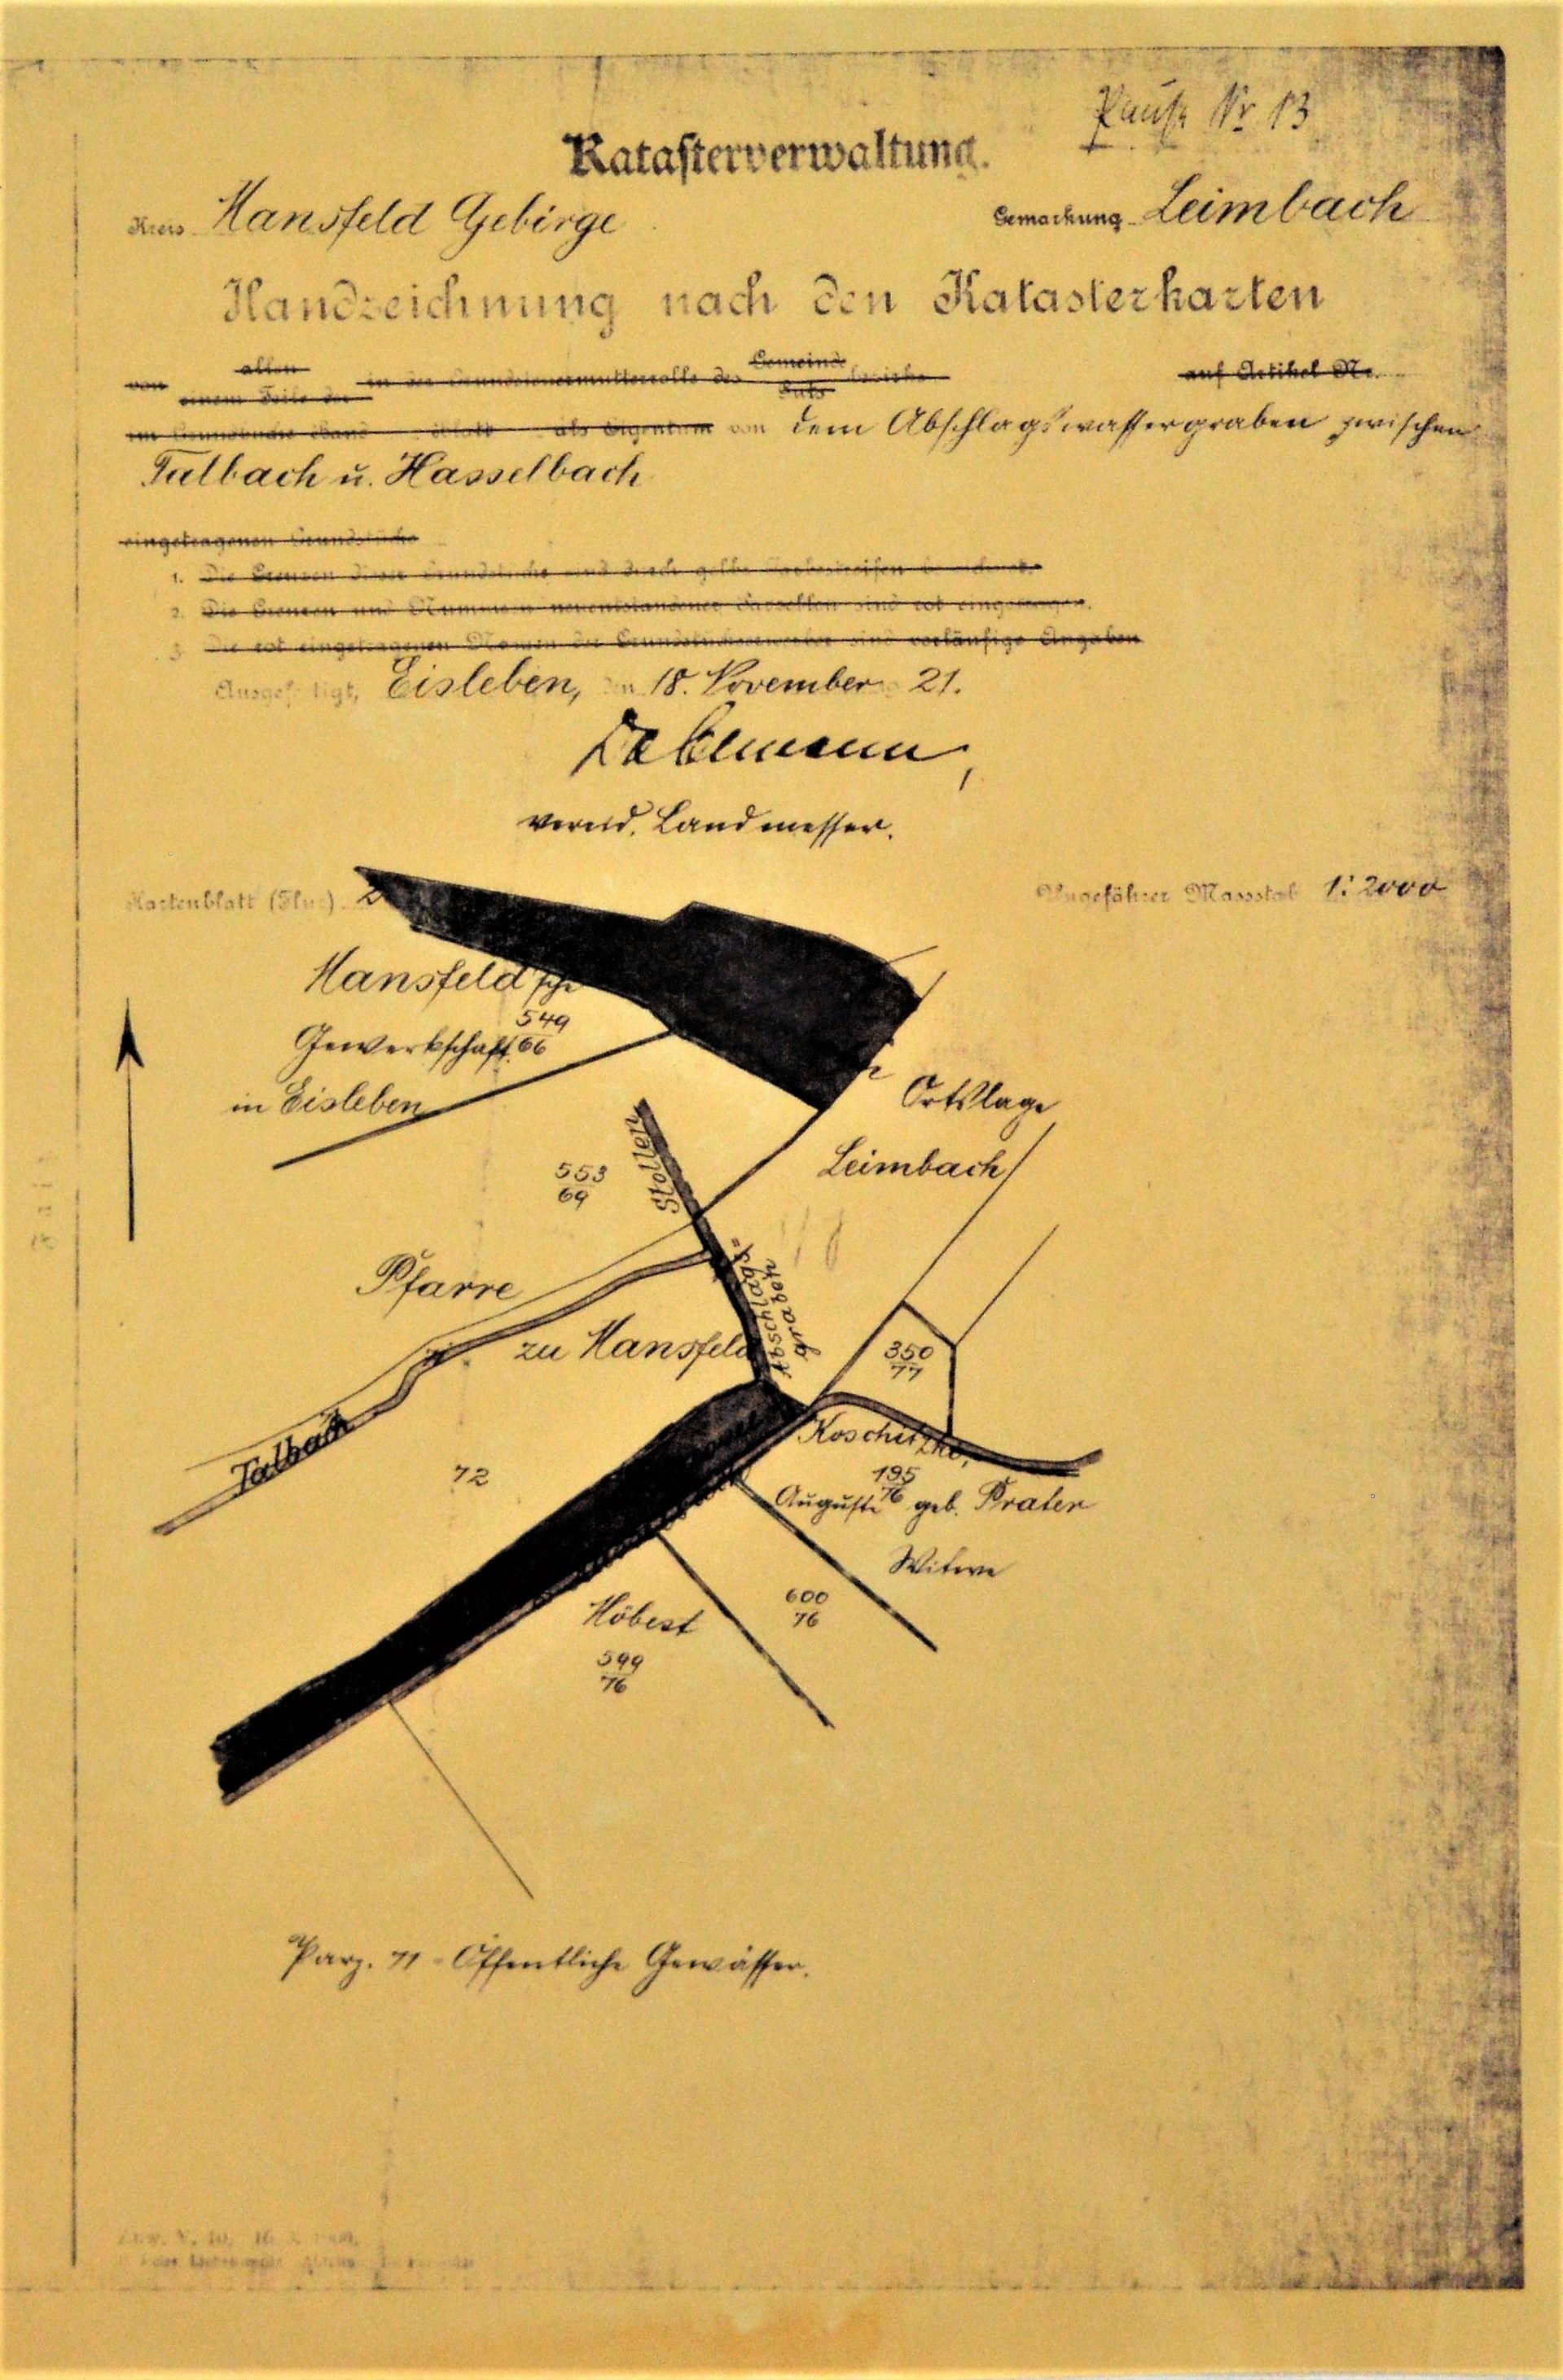 Handzeichnung nach den Katasterkarten von dem Abschlagewässergraben zwischen Talbach u. Hasselbach. (Mansfeld-Museum im Humboldt-Schloss CC BY-NC-SA)